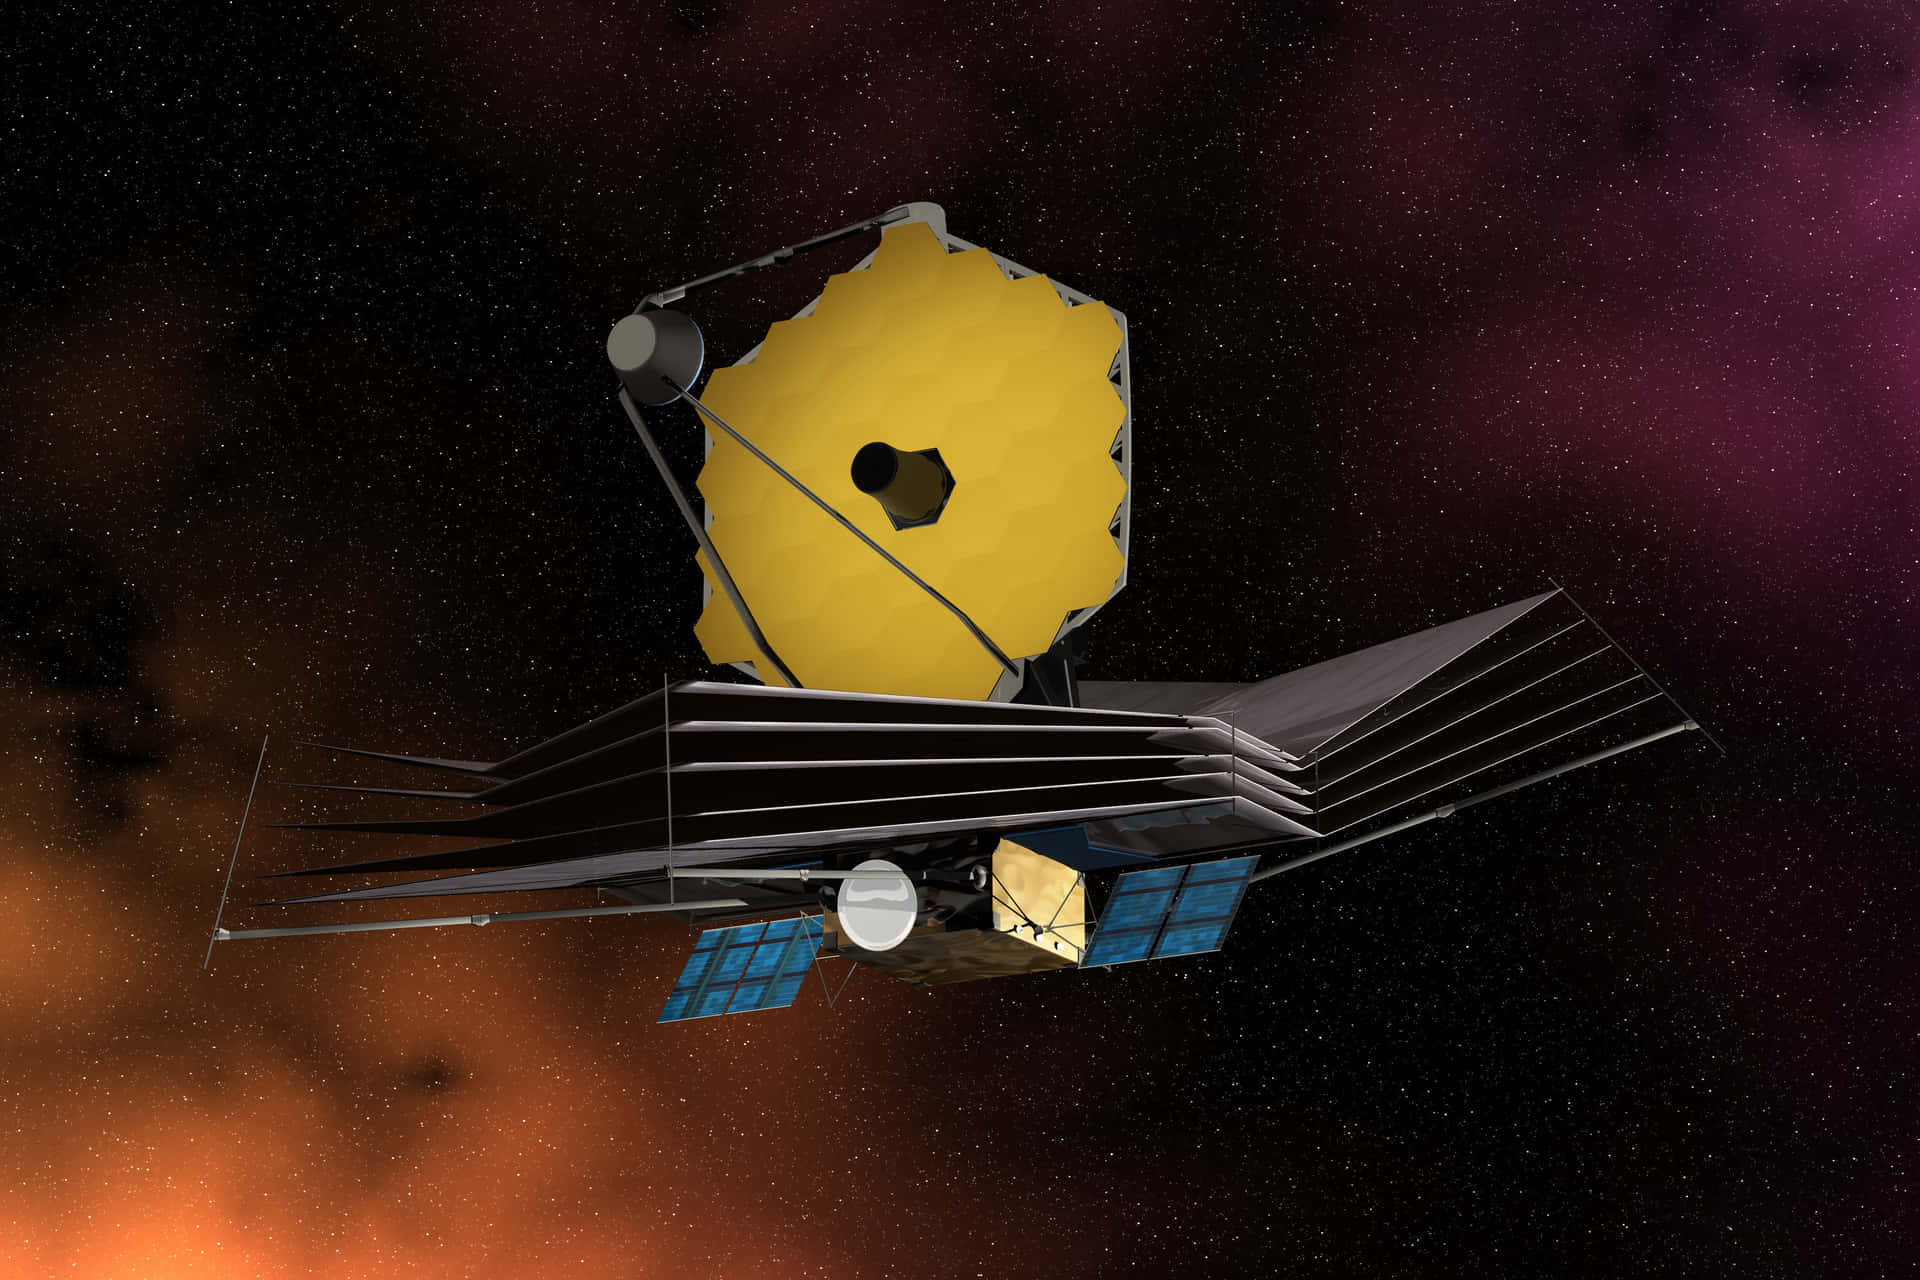 Riesigesbild Des James Webb Teleskops